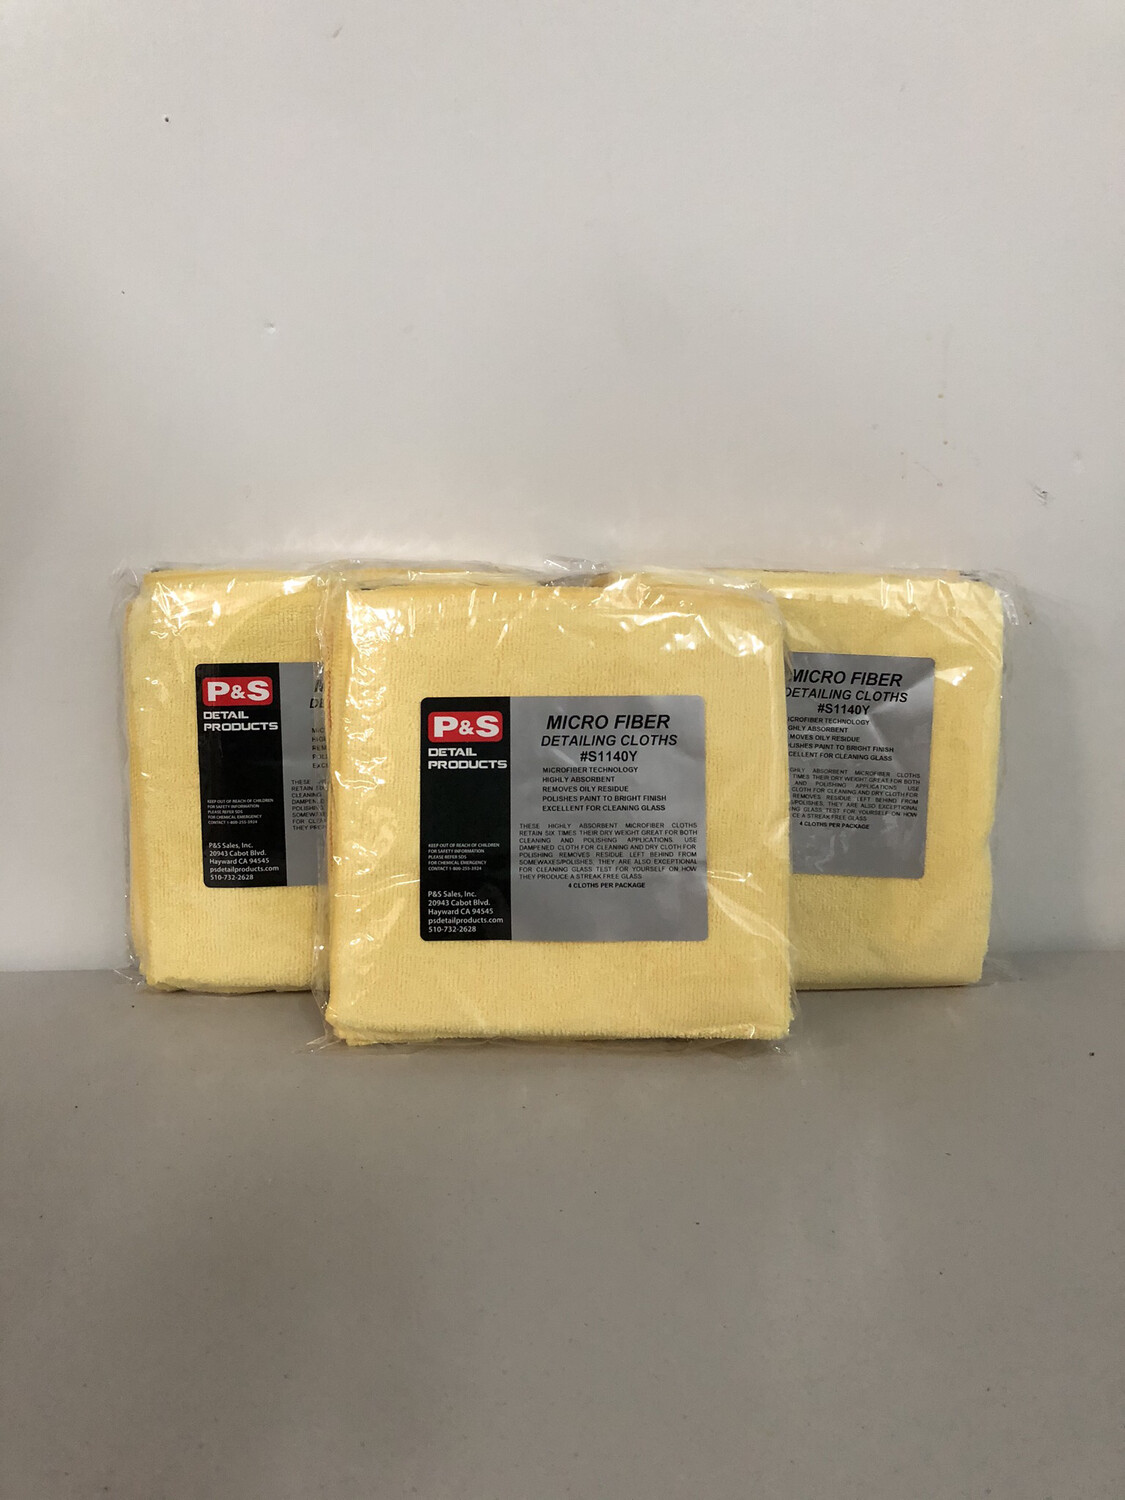 P&S Microfiber Towel (Yellow) - 4 Pack